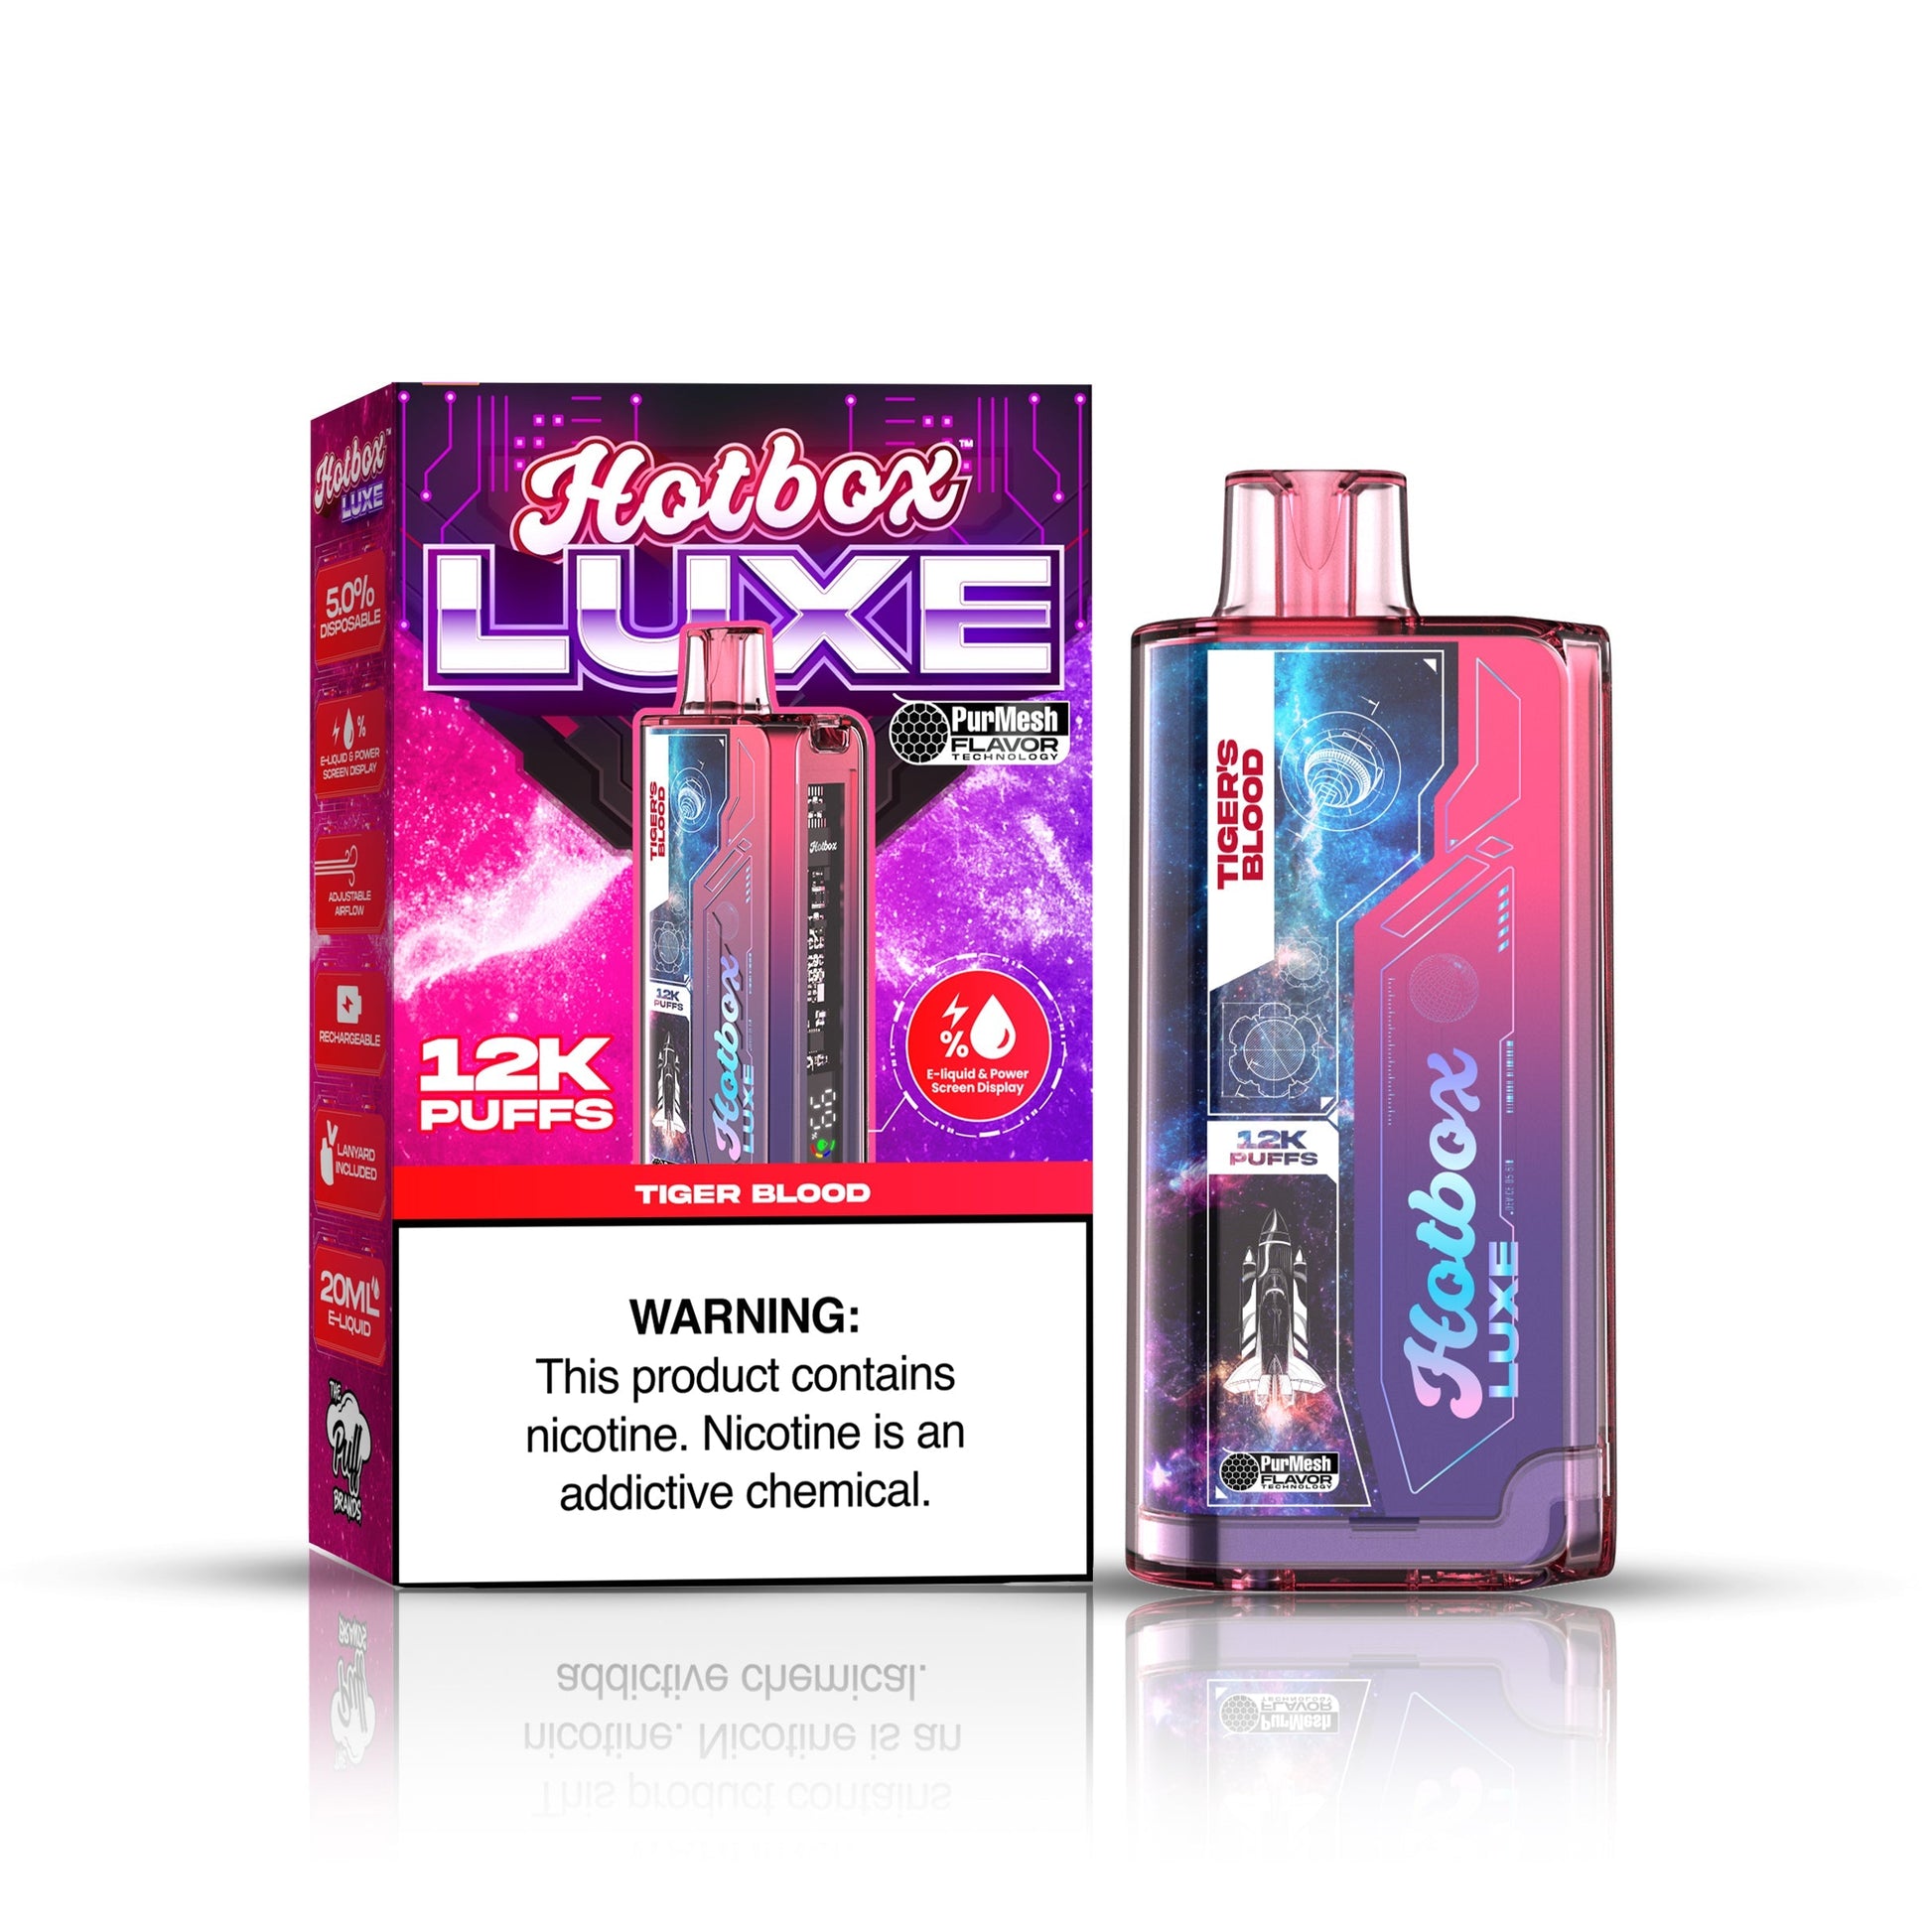 Hotbox Luxe 12k Puffs Disposable Vape 20mL Best Flavor Tiger Blood